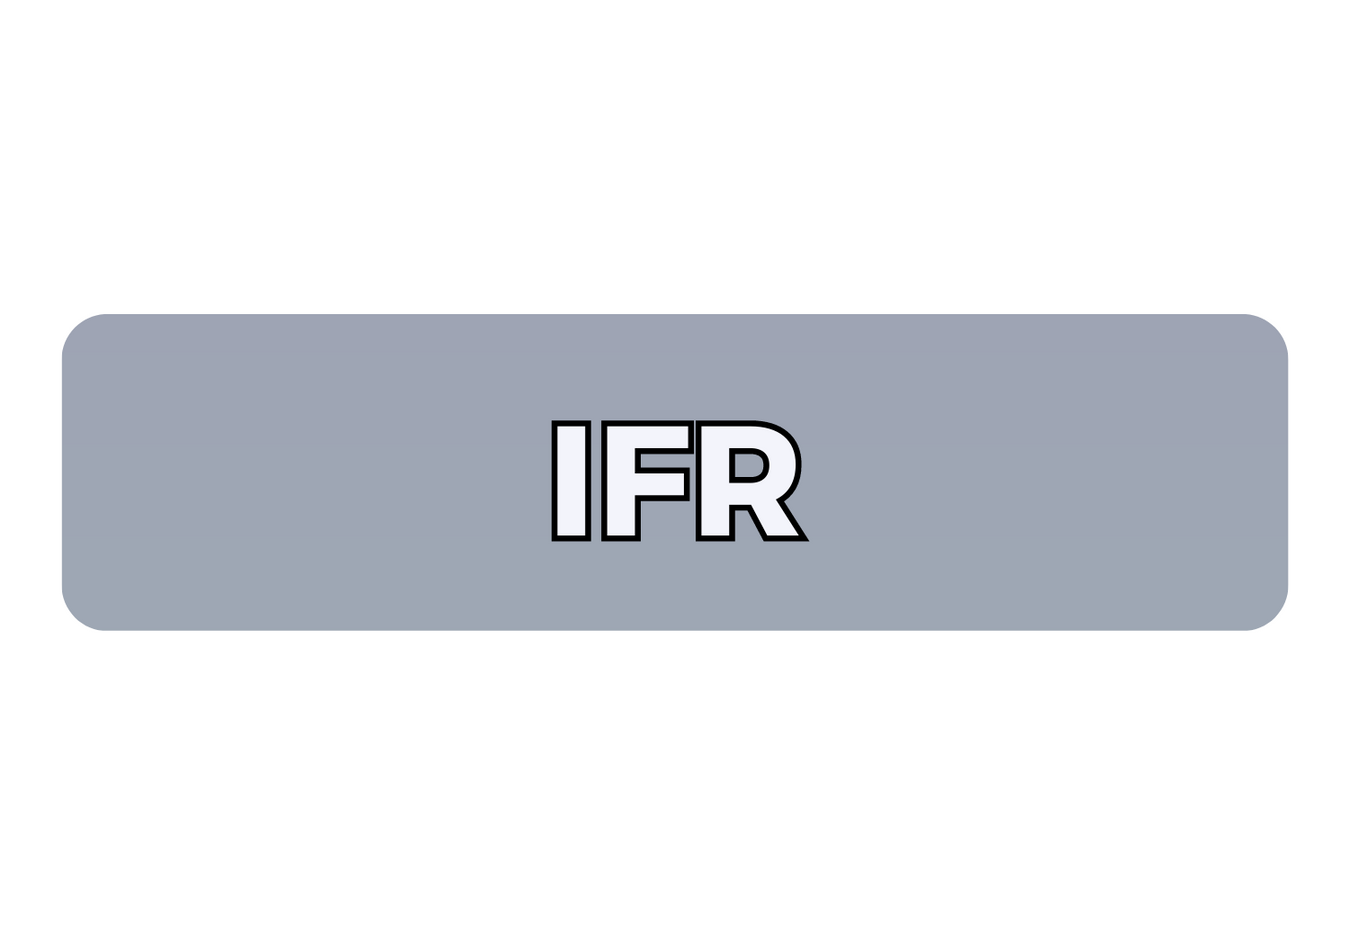 IFR